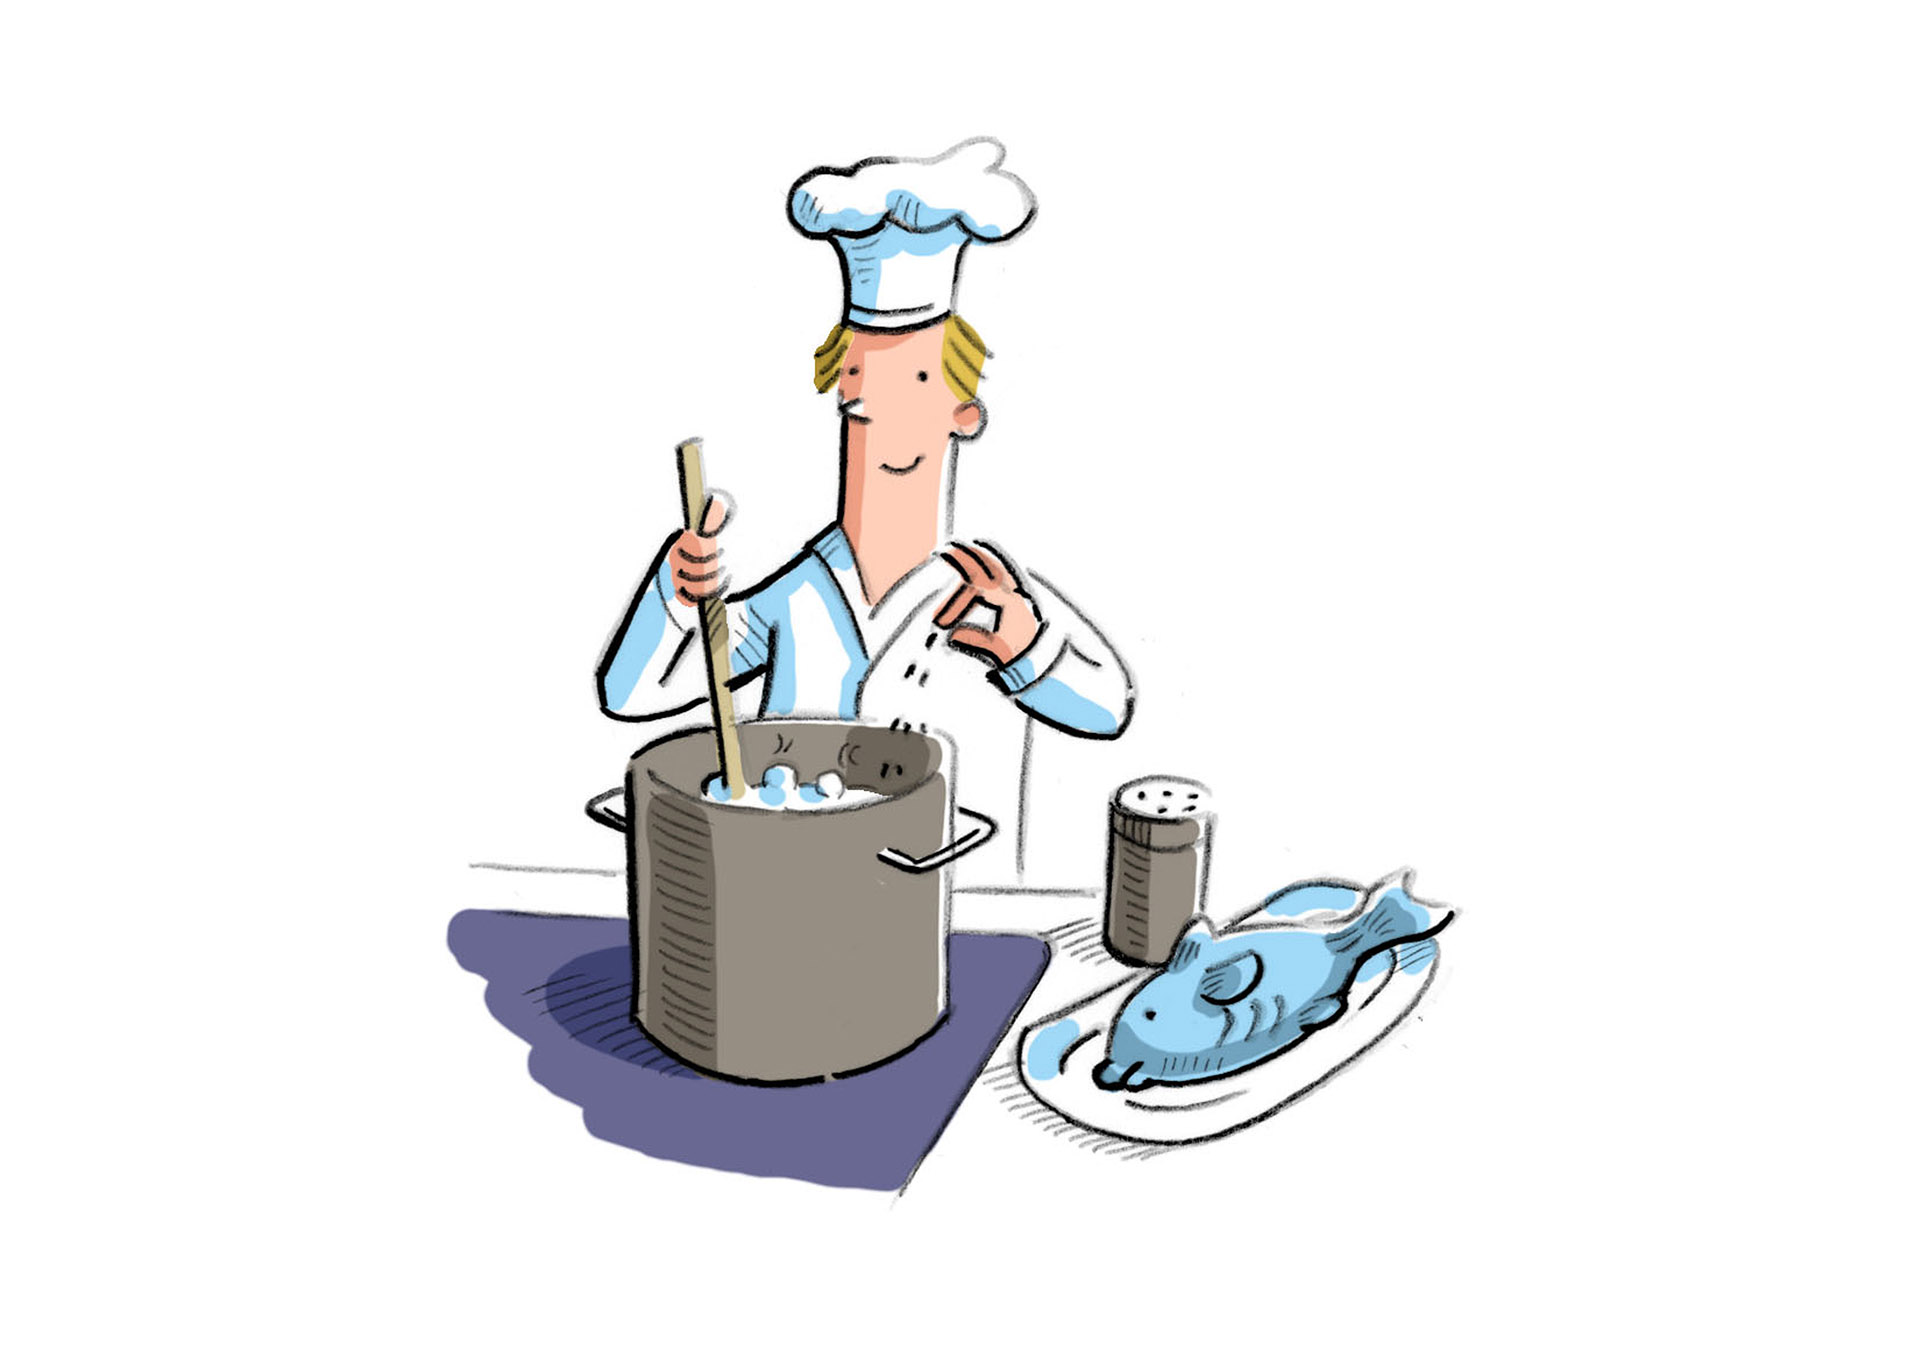 Bild: Koch rührt in einem Koch-Topf